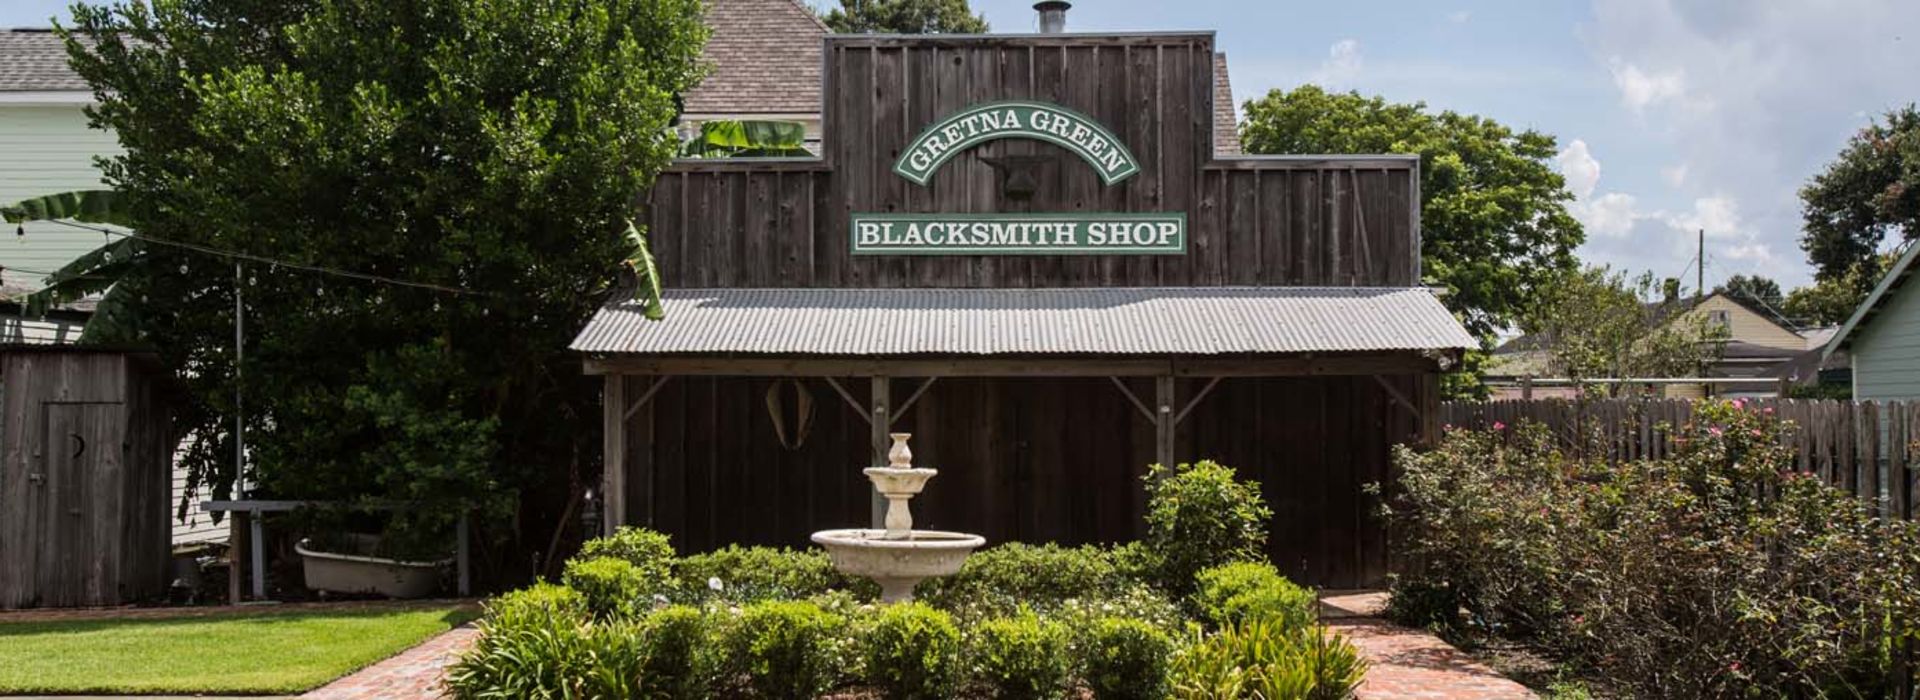 Gretna Blacksmith Shop